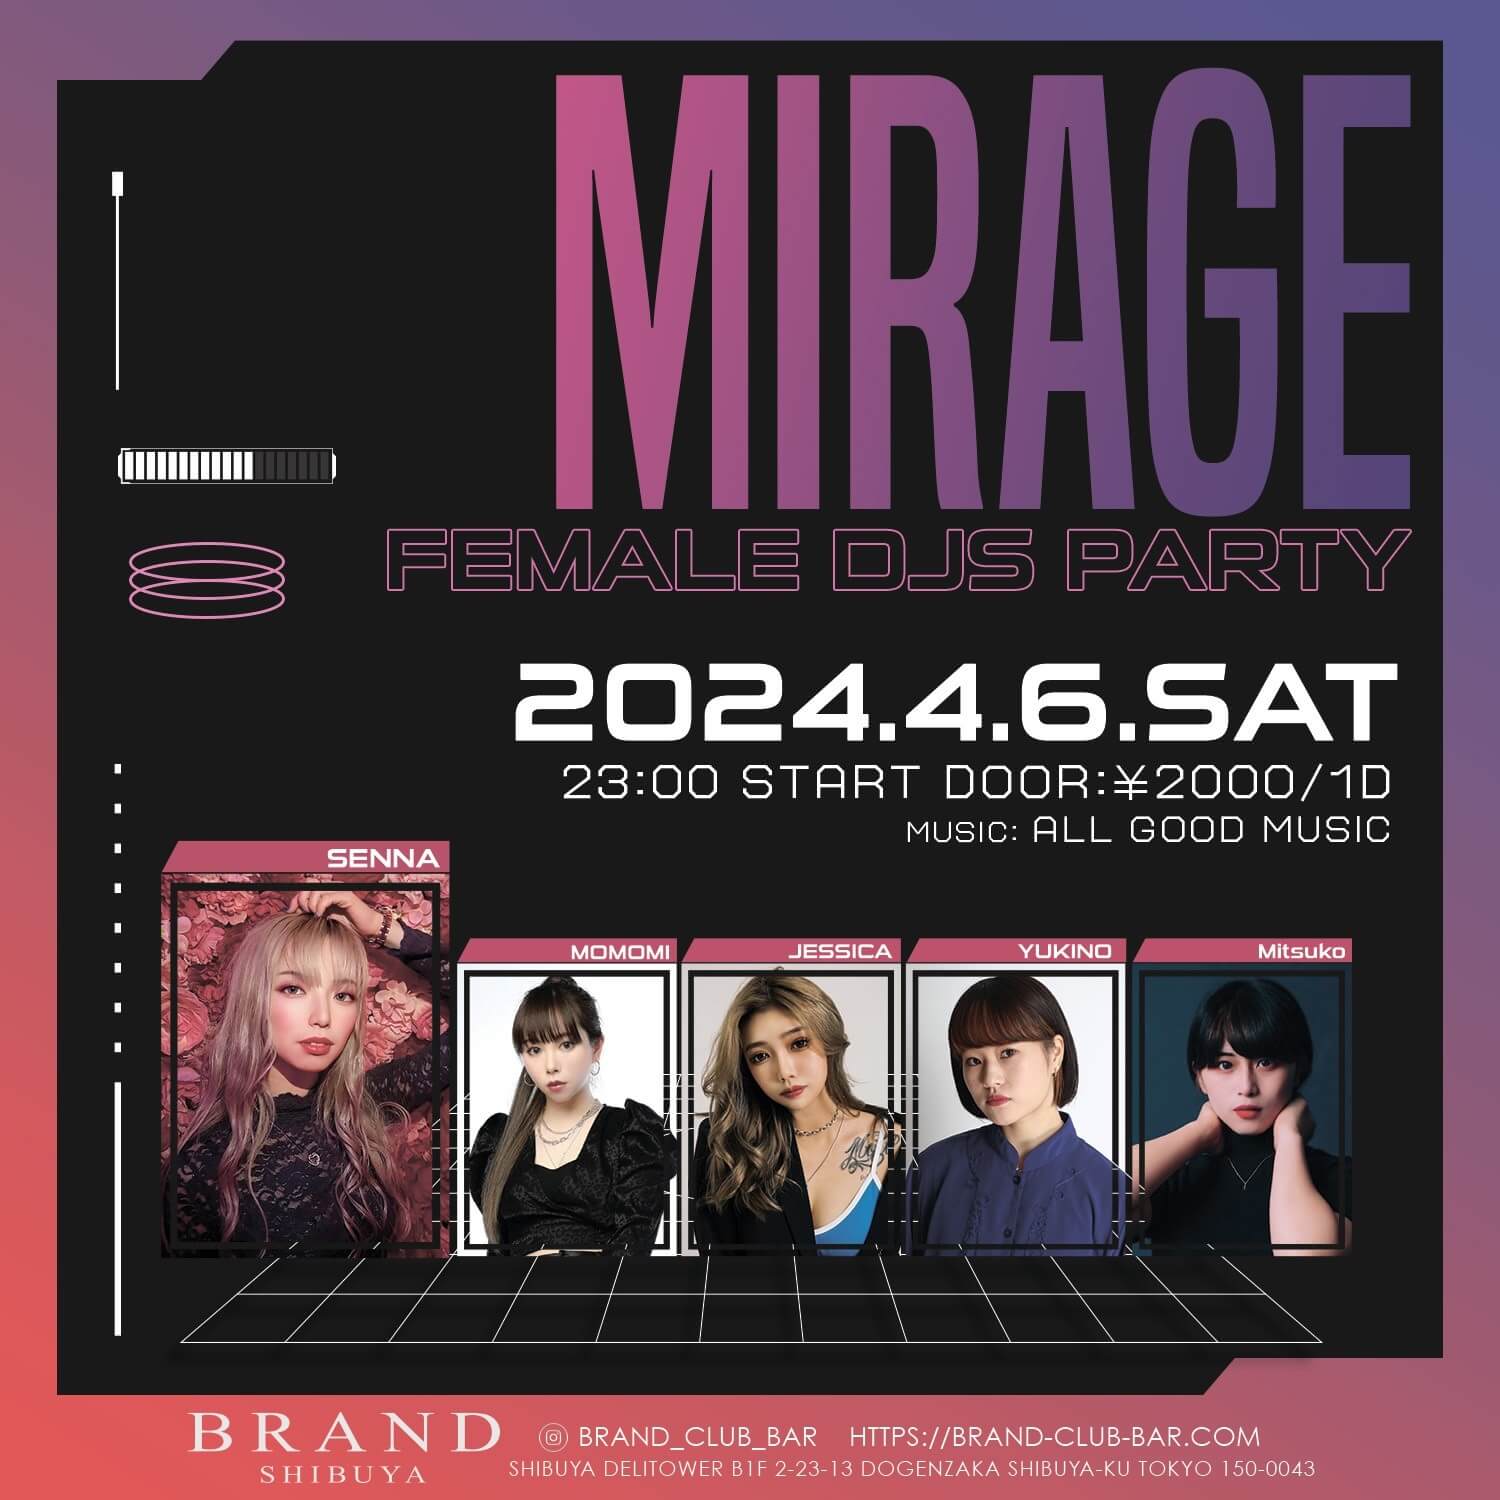 MIRAGE - FEMALE DJS PARTY 2024年04月06日（土曜日）に渋谷 クラブのBRAND SHIBUYAで開催されるALL MIXイベント